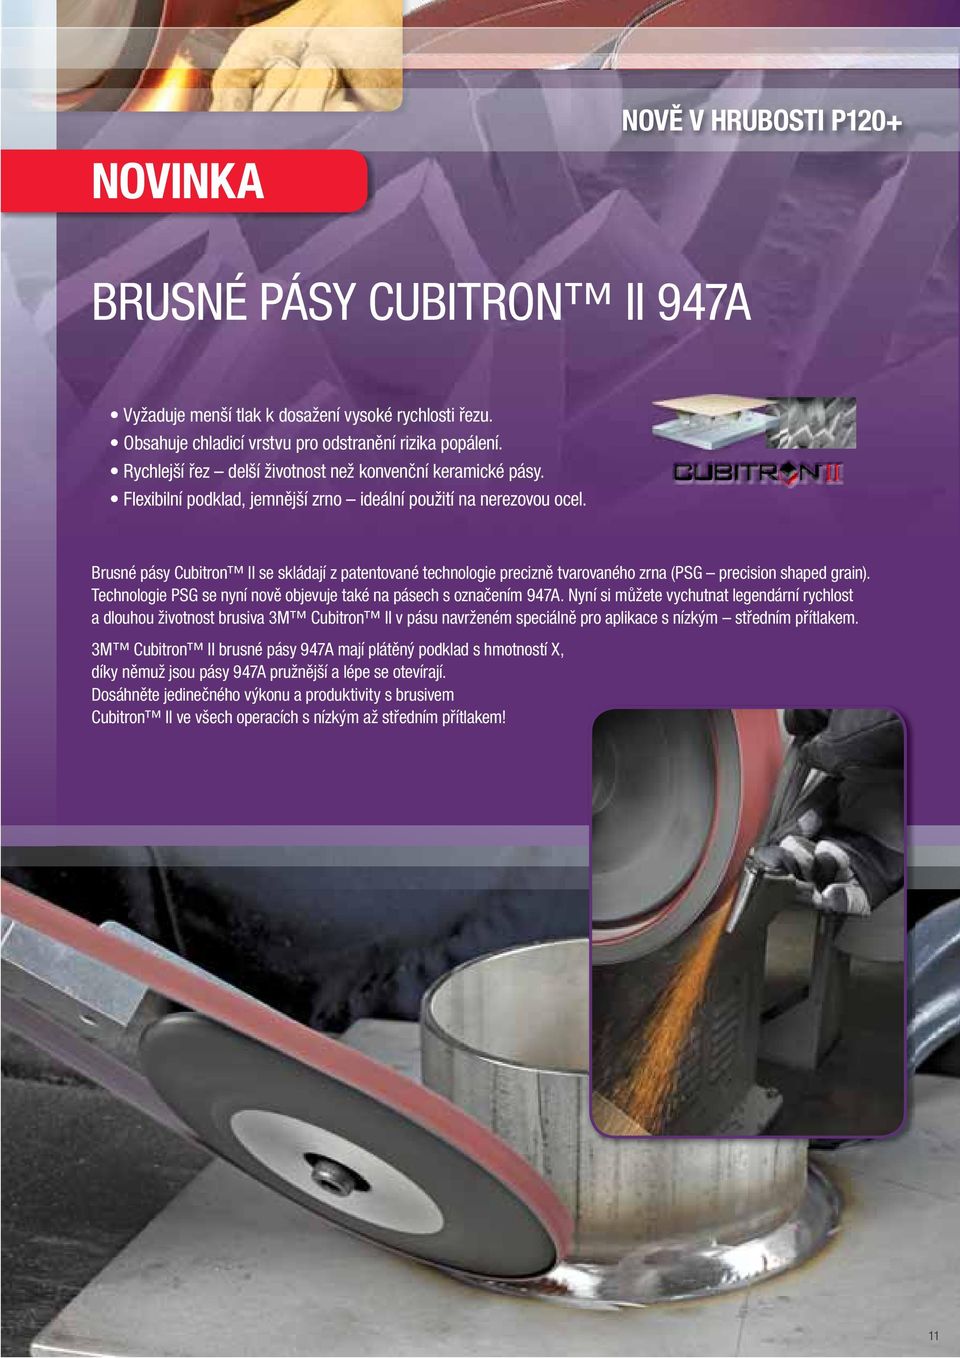 Brusné pásy Cubitron II se skládají z patentované technologie precizně tvarovaného zrna (PSG precision shaped grain). Technologie PSG se nyní nově objevuje také na pásech s označením 947A.